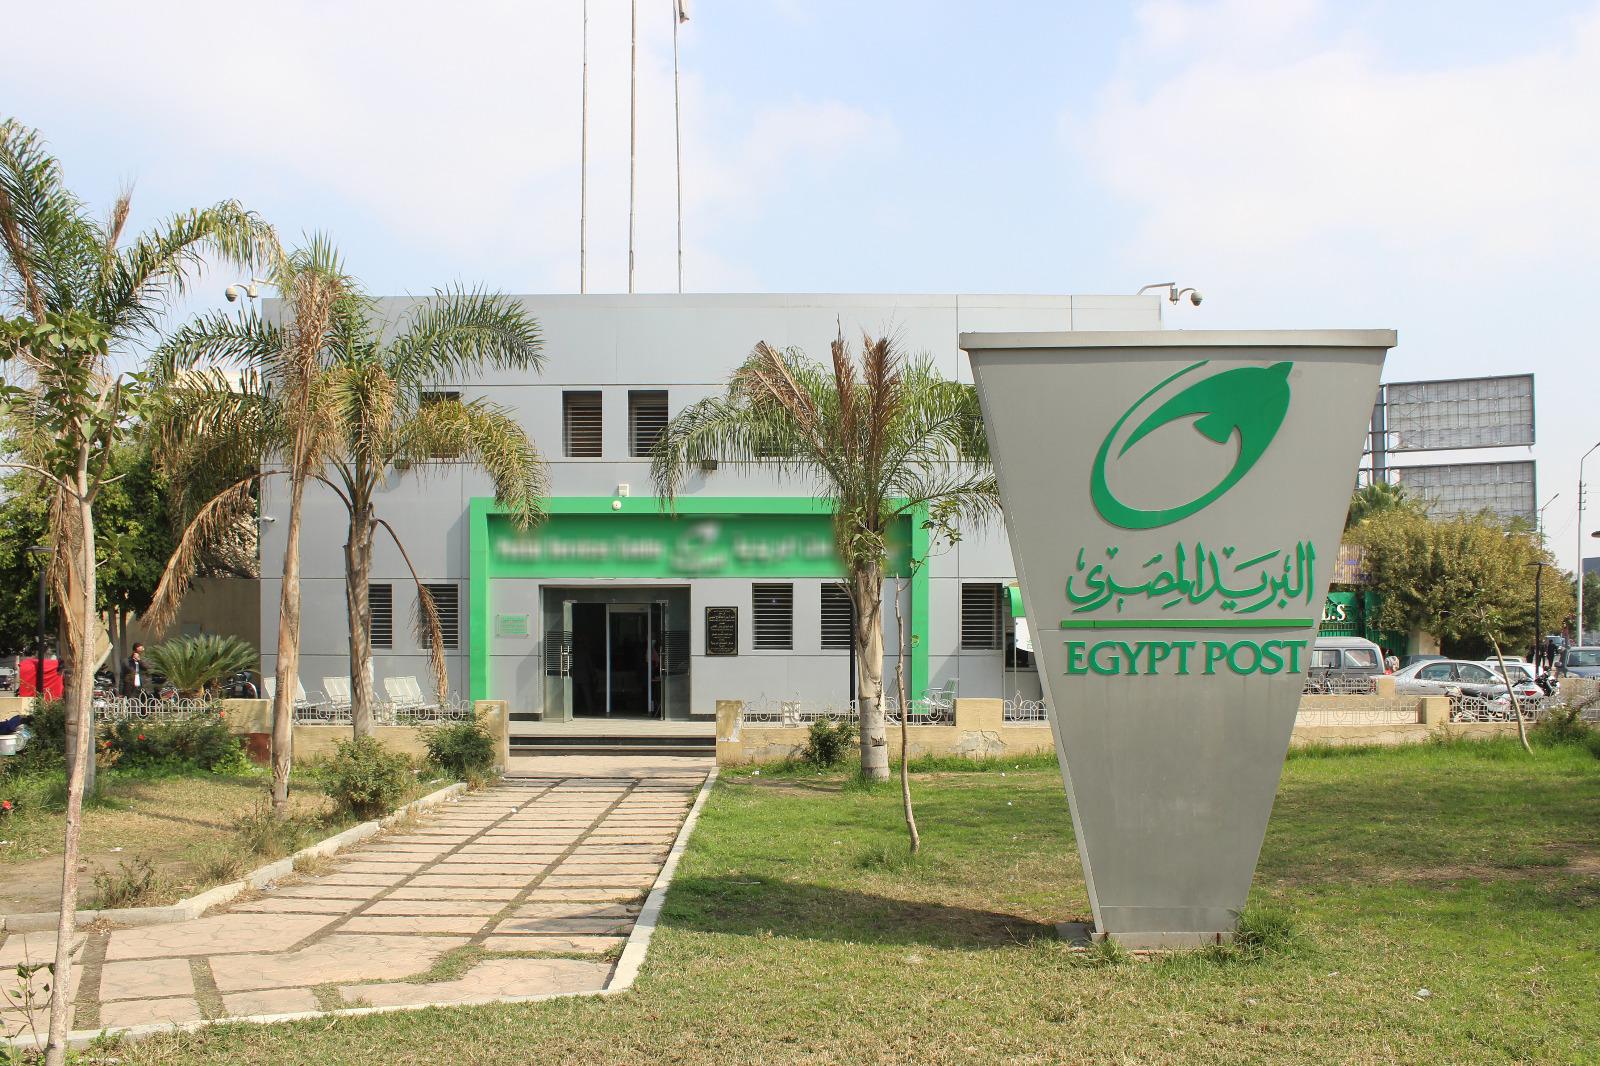 مكاتب البريد في مصر